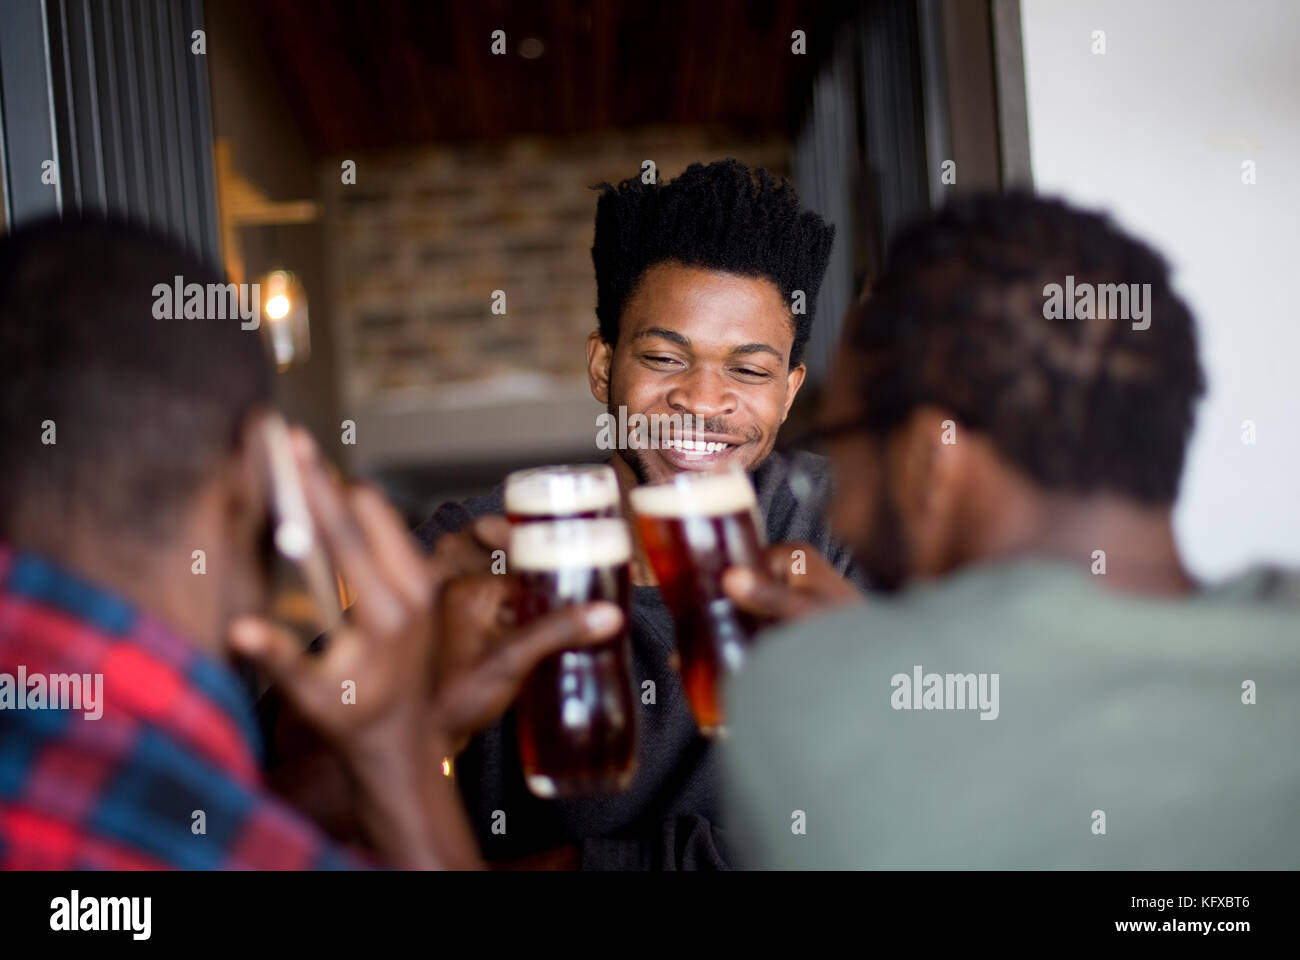 Three men toasting at a bar Stock Photo